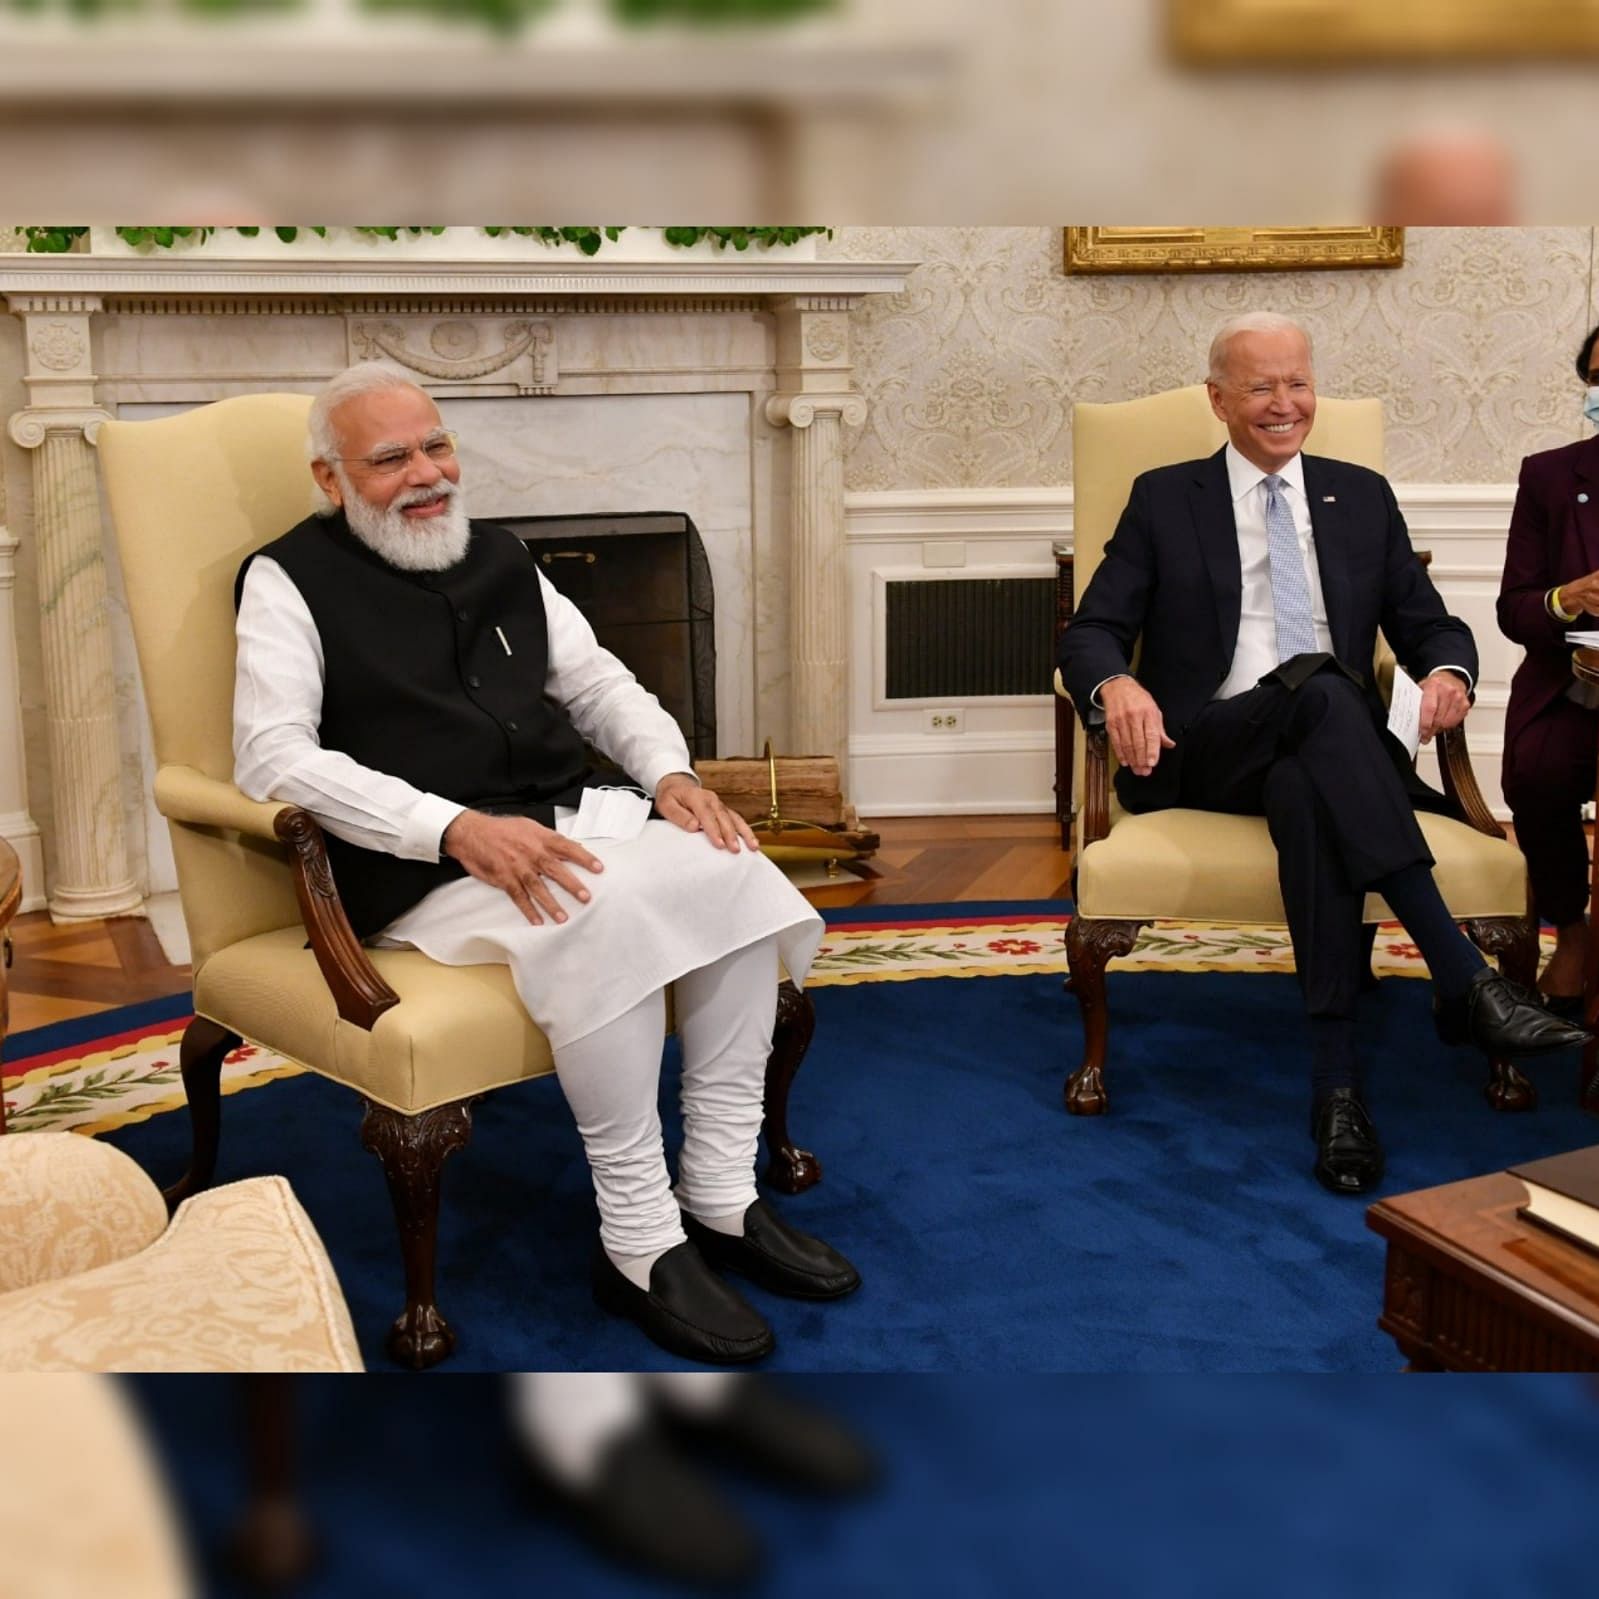 व्हाइट हाउस में प्रधानमंत्री नरेंद्र मोदी के साथ पहली बार जो बाइडन की बैठक/ फोटो: ट्विटर